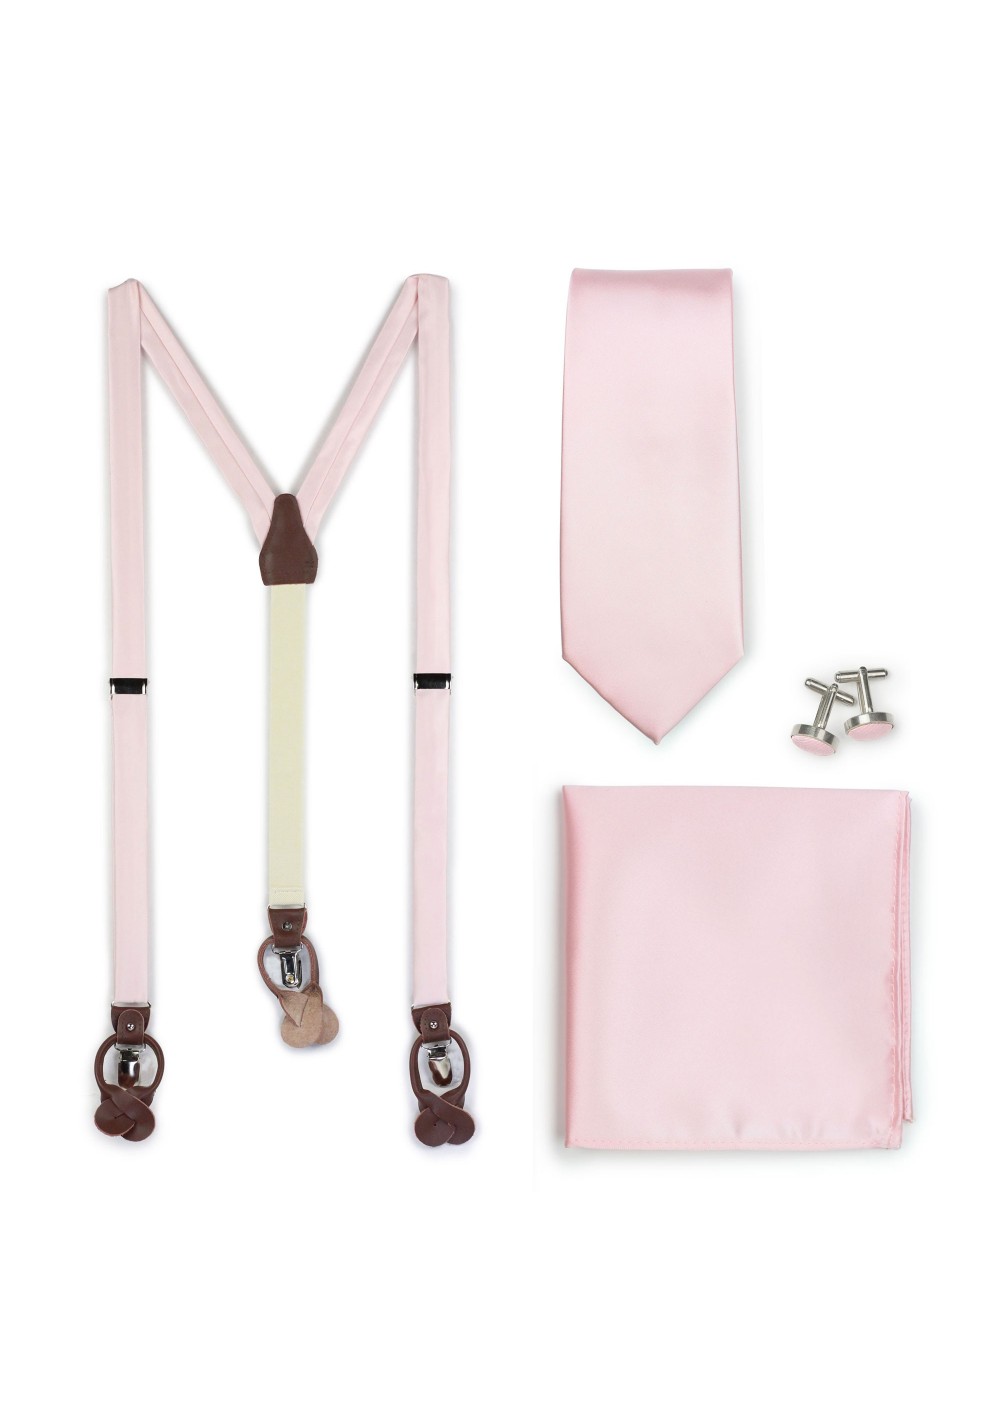 Blush Suspender and Necktie Wedding Gift Set